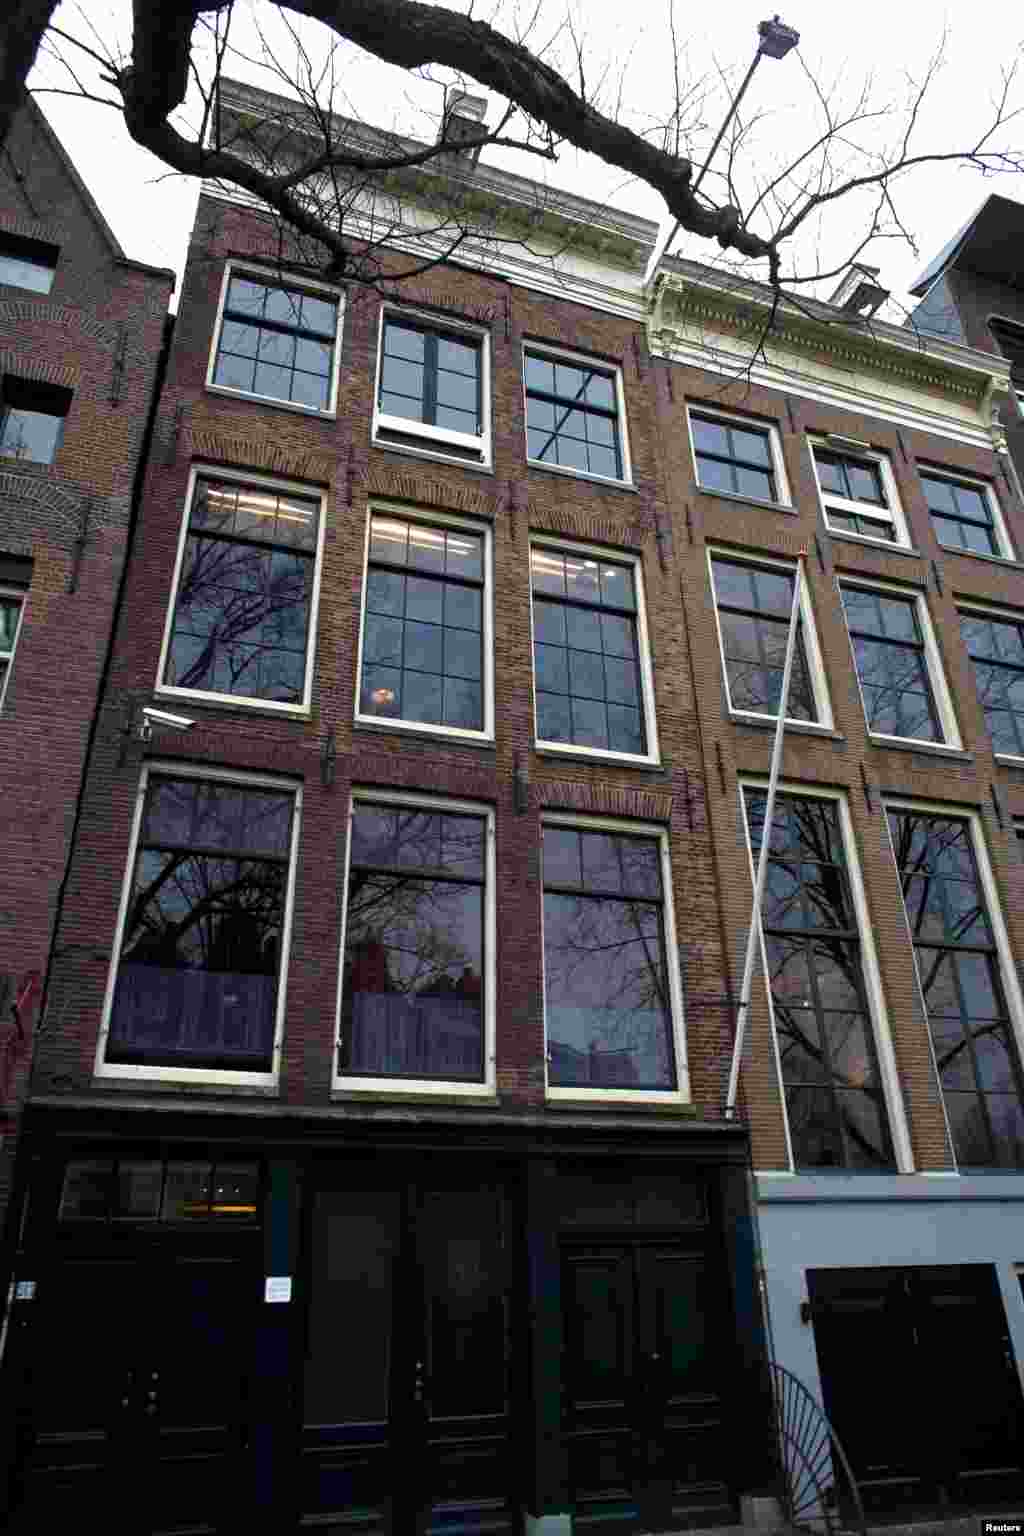 Míg a Zsidó Tanács többi tagját 1943-ban deportálták, Van den Bergh Hollandiában maradhatott, és 1950-ben halt meg. A képen Anne Frank és családjának amszterdami lakása